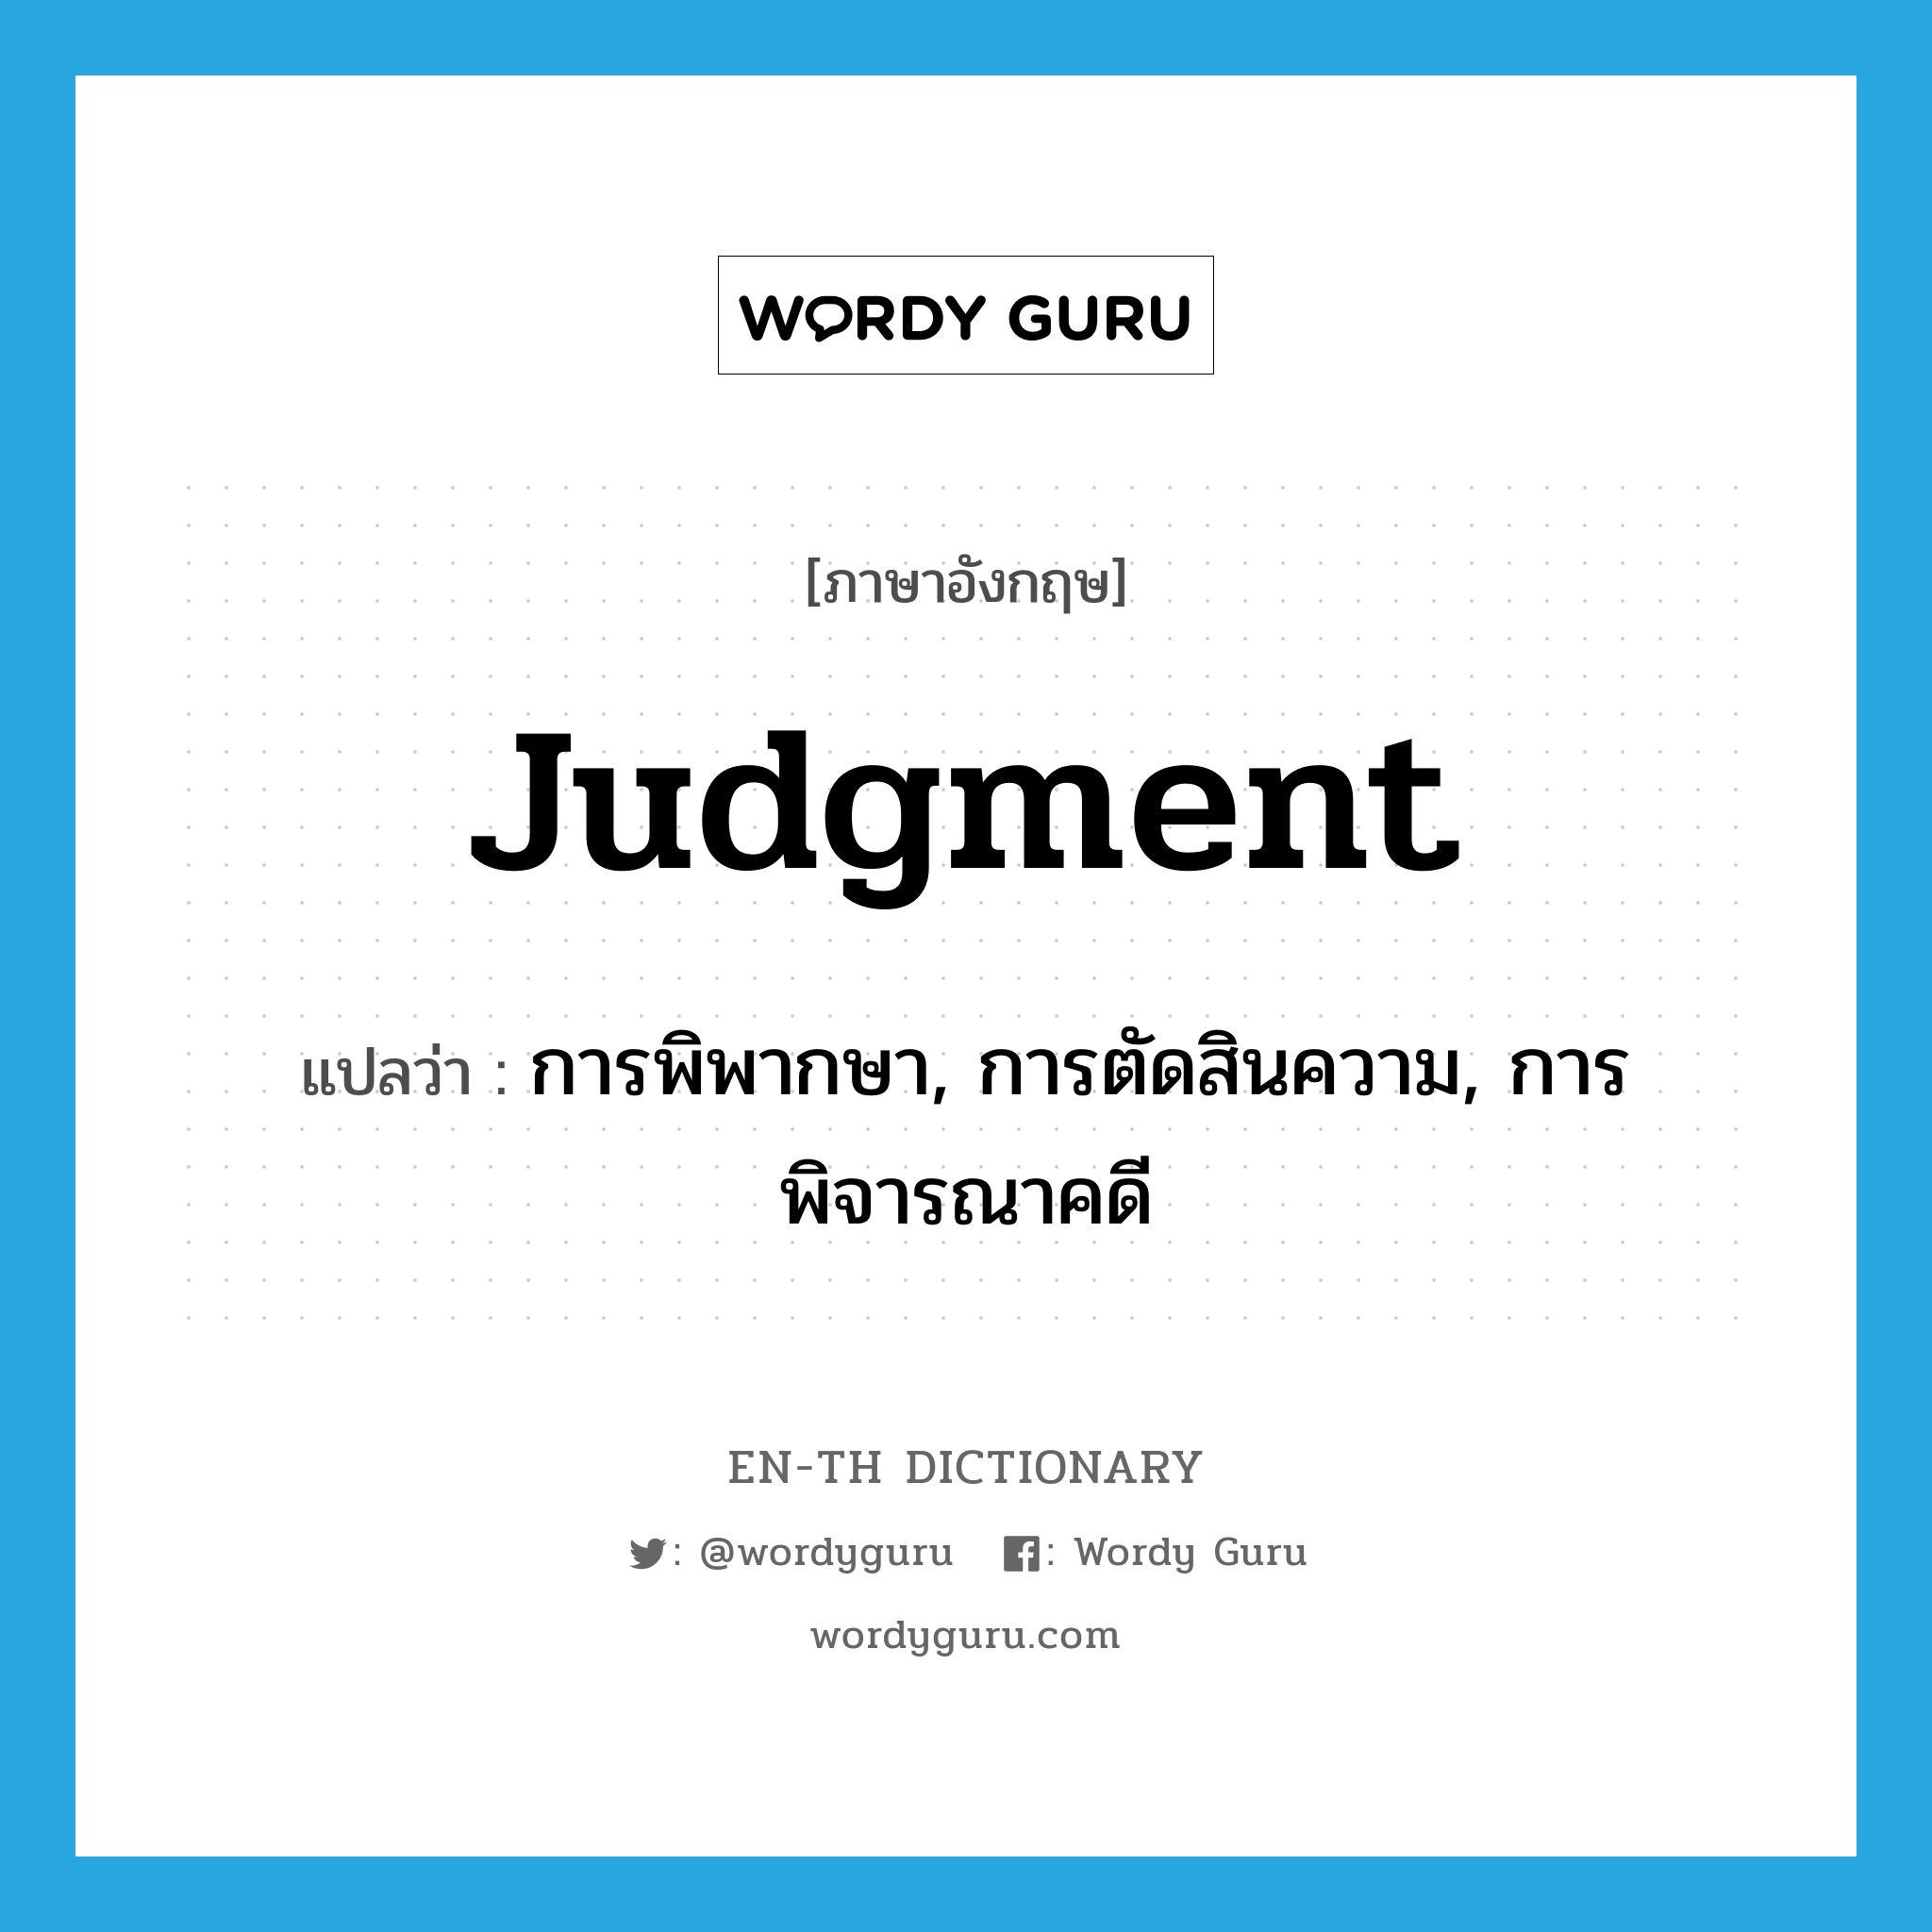 การพิพากษา, การตัดสินความ, การพิจารณาคดี ภาษาอังกฤษ?, คำศัพท์ภาษาอังกฤษ การพิพากษา, การตัดสินความ, การพิจารณาคดี แปลว่า judgment ประเภท N หมวด N